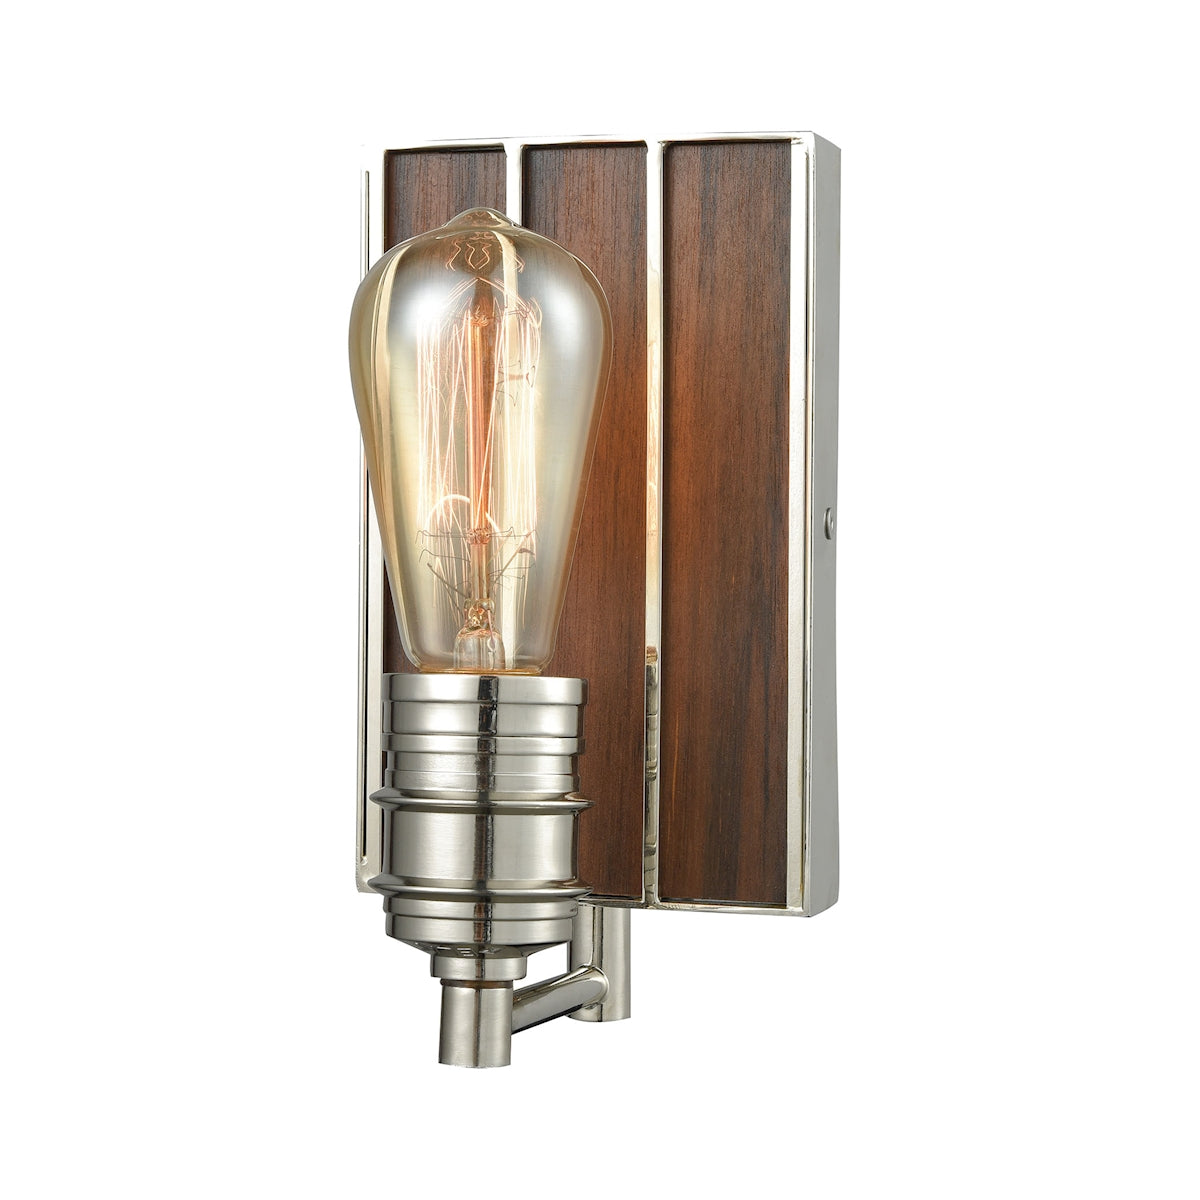 ELK Lighting 16430/1 Brookweiler 1-Light Vanity Lamp in Polished Nickel with Dark Wood Backplate